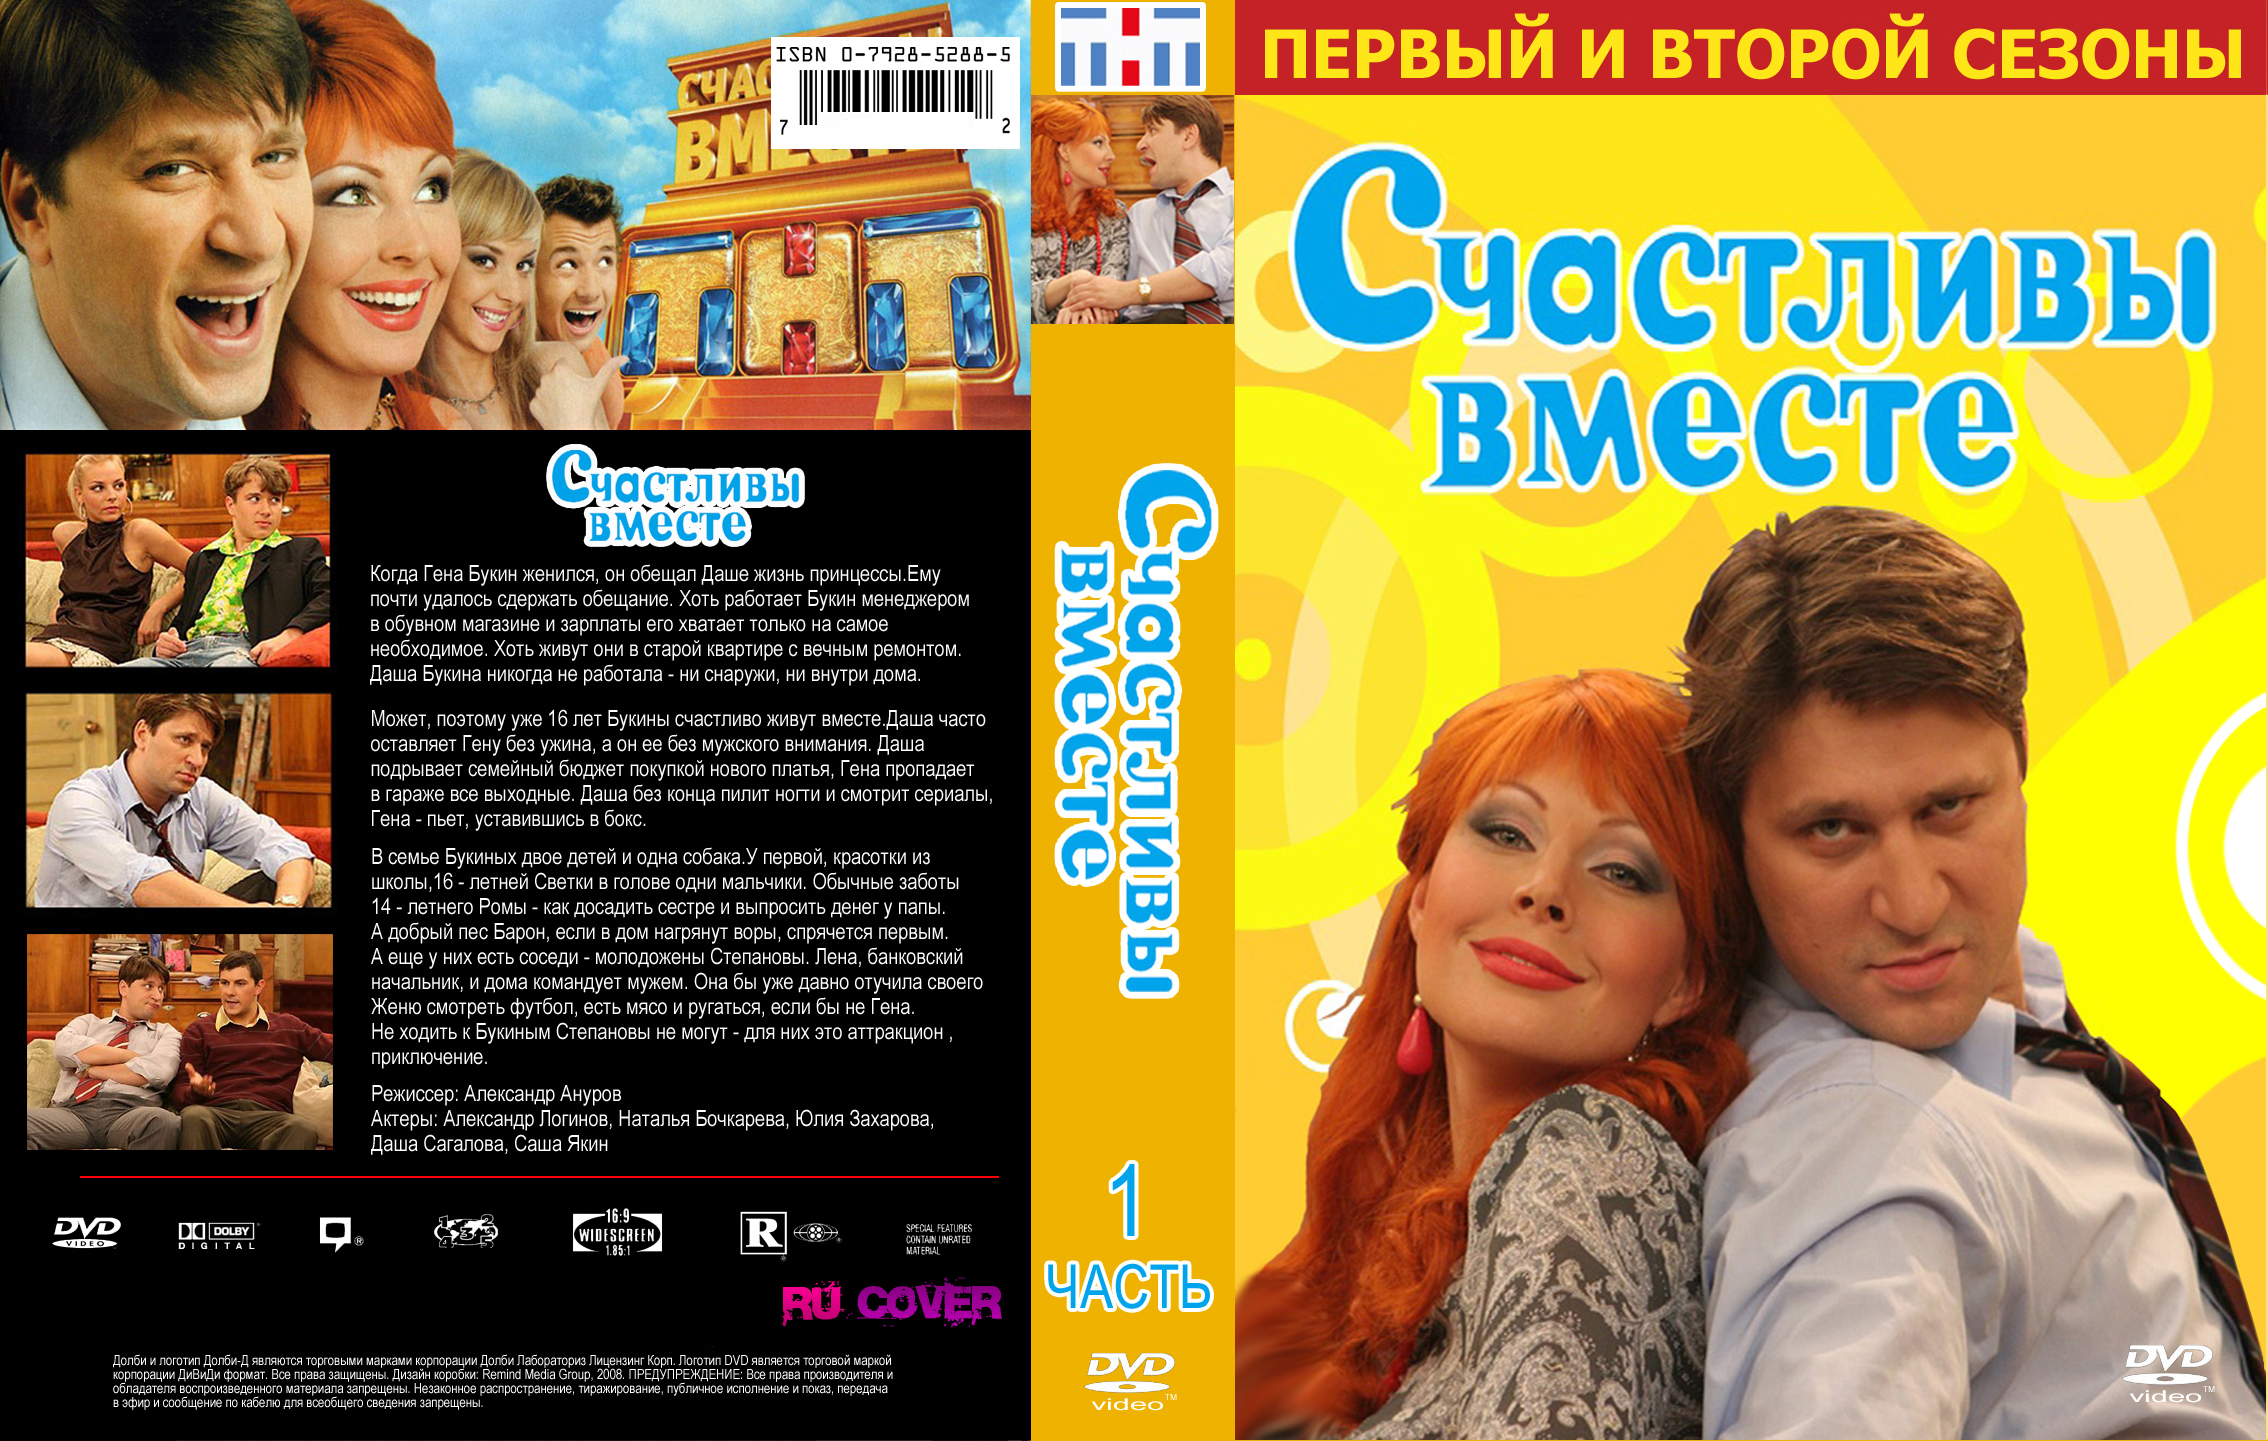 Дизайн DVD